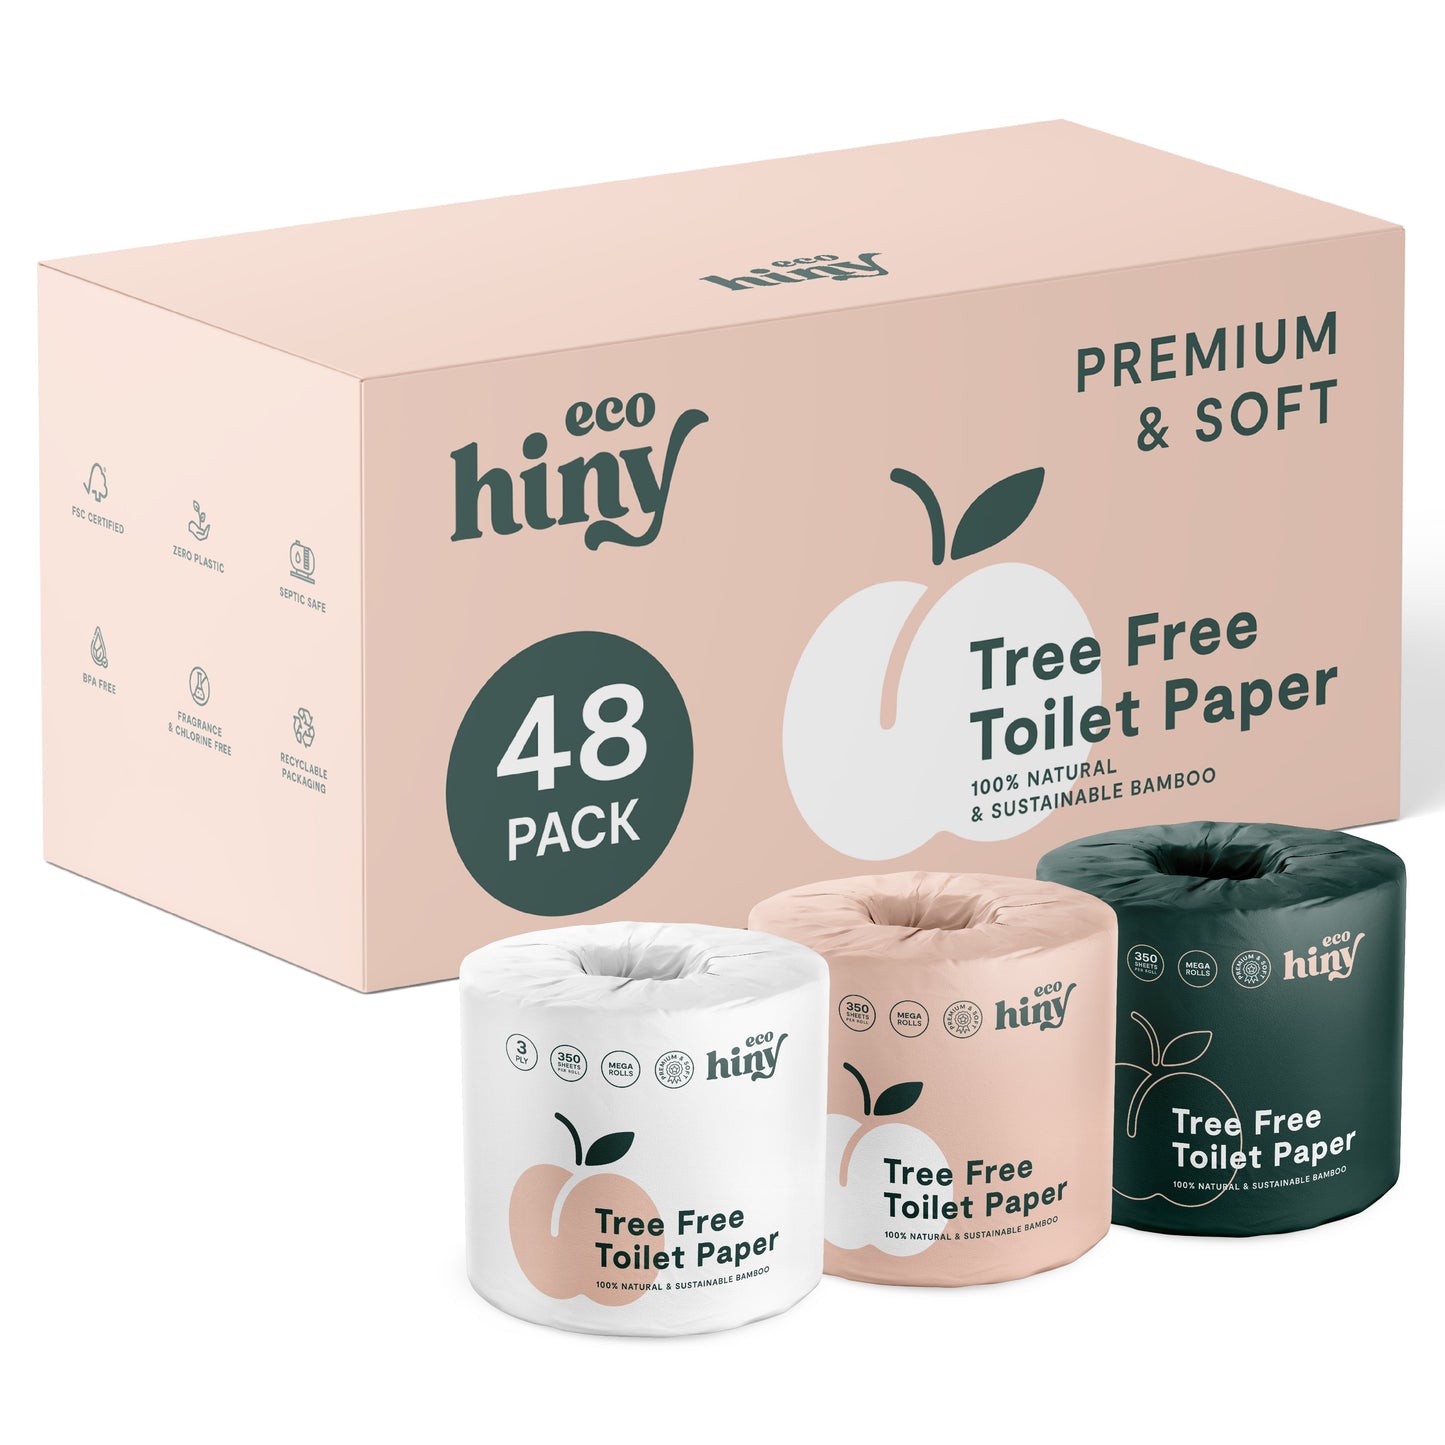 
                  
                    ecoHiny Premium Bamboo Toilet Paper | Mega Rolls, 3 PLY & 350 Sheets by ecoHiny
                  
                